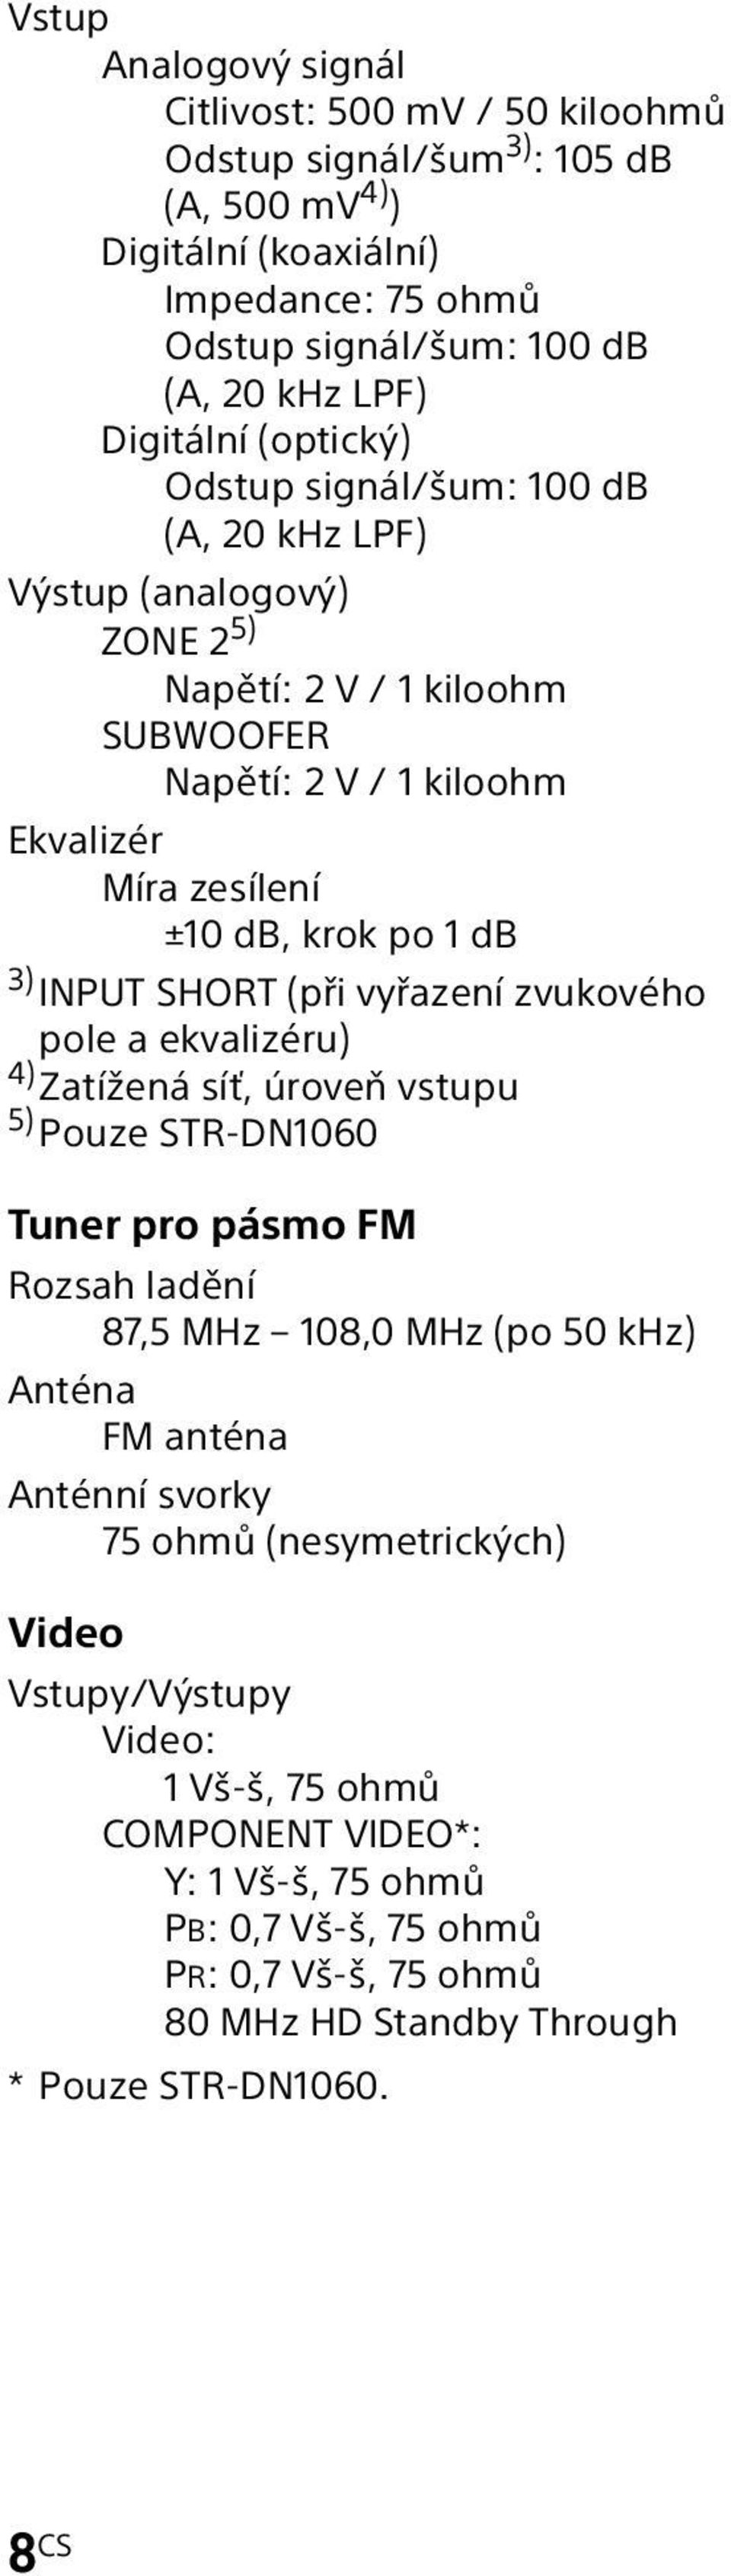 SHORT (při vyřazení zvukového pole a ekvalizéru) 4) Zatížená síť, úroveň vstupu 5) Pouze STR-DN1060 Tuner pro pásmo FM Rozsah ladění 87,5 MHz 108,0 MHz (po 50 khz) Anténa FM anténa Anténní svorky